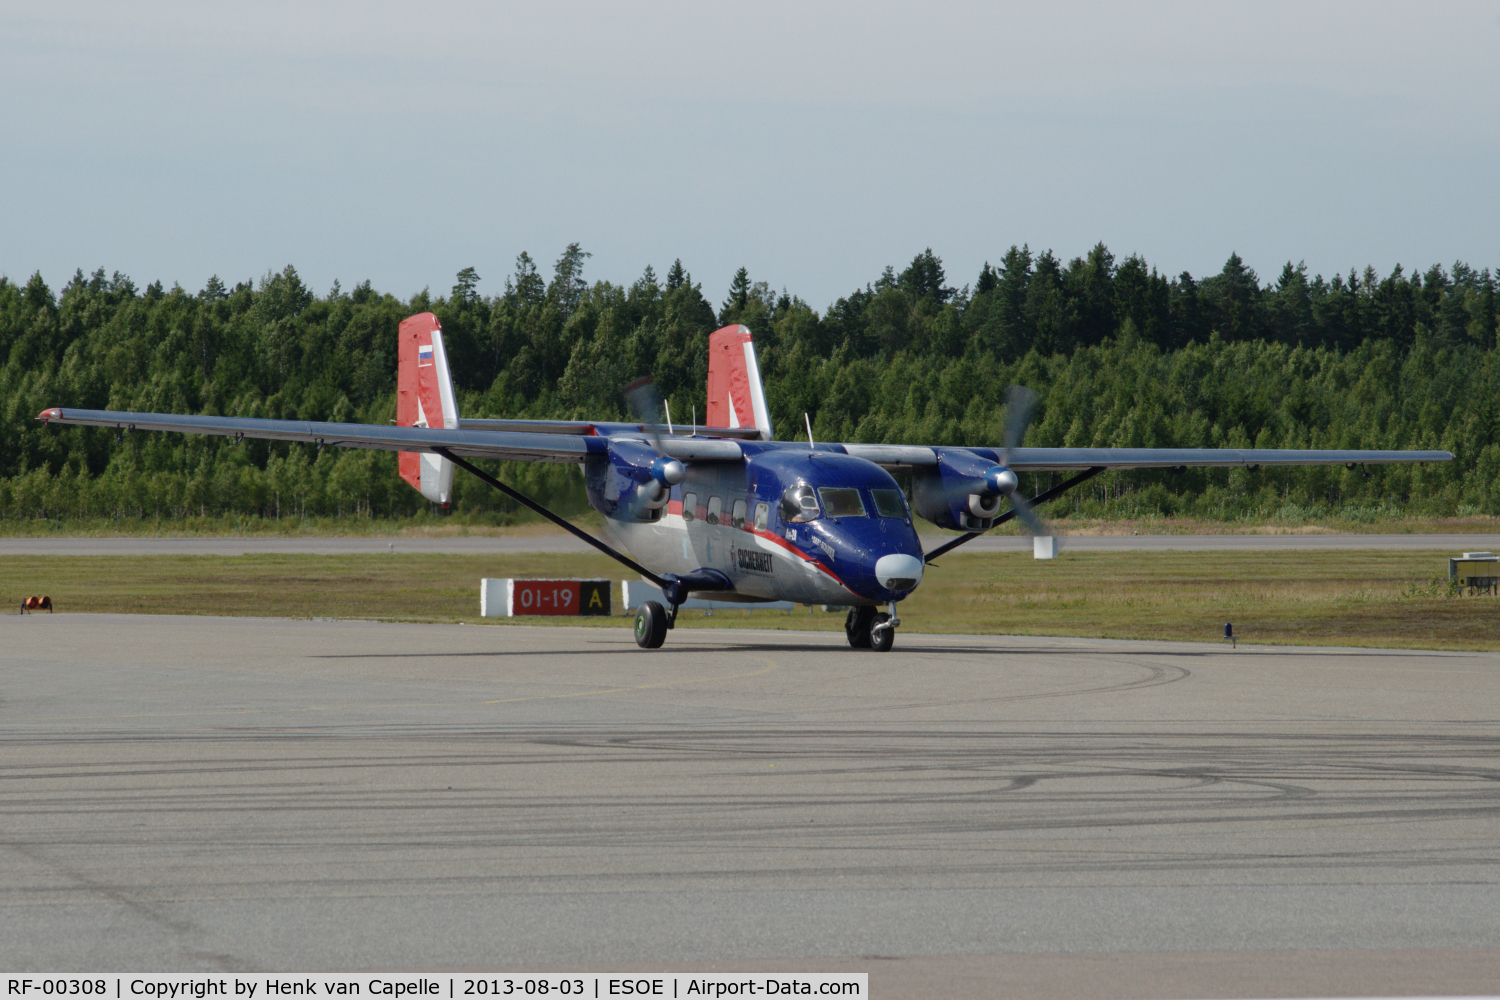 RF-00308, Antonov An-28 C/N 1AJ001-04, PZL-Mielec built An-28 taxying in at Örebro airport, Sweden.